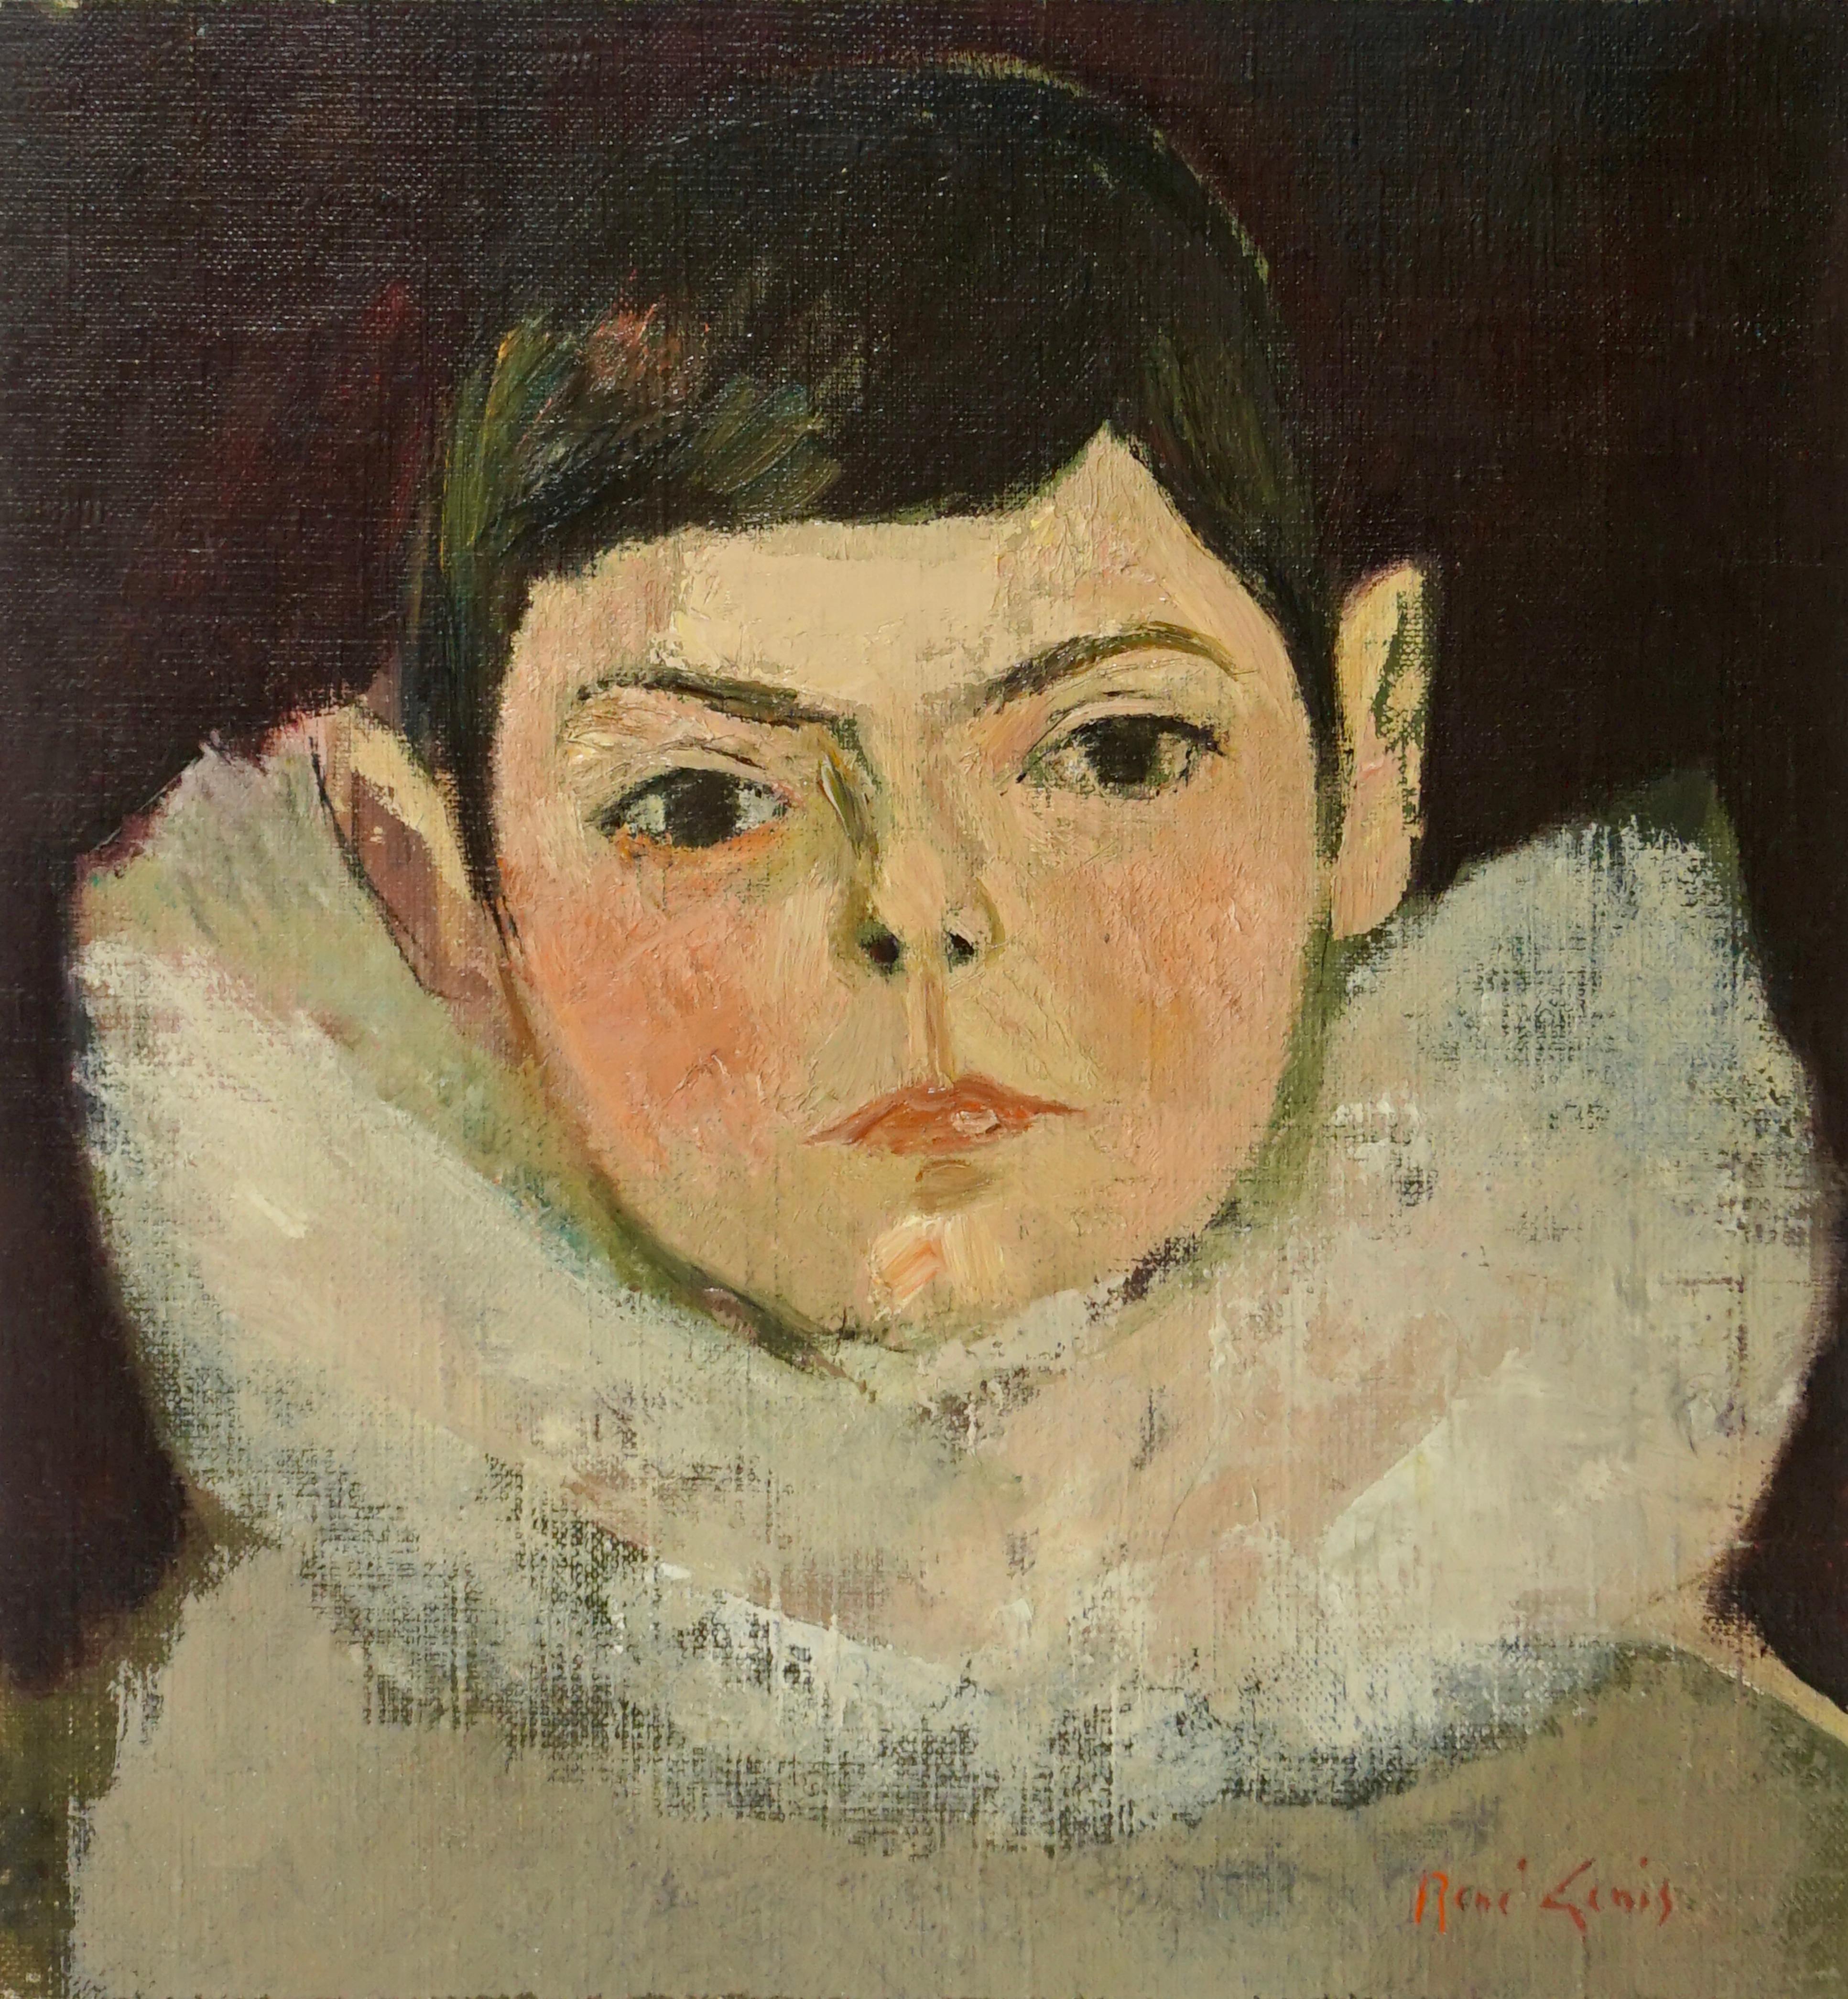 René Genis Portrait Painting - “Enfant A La Collarette” The Child in the Collar.